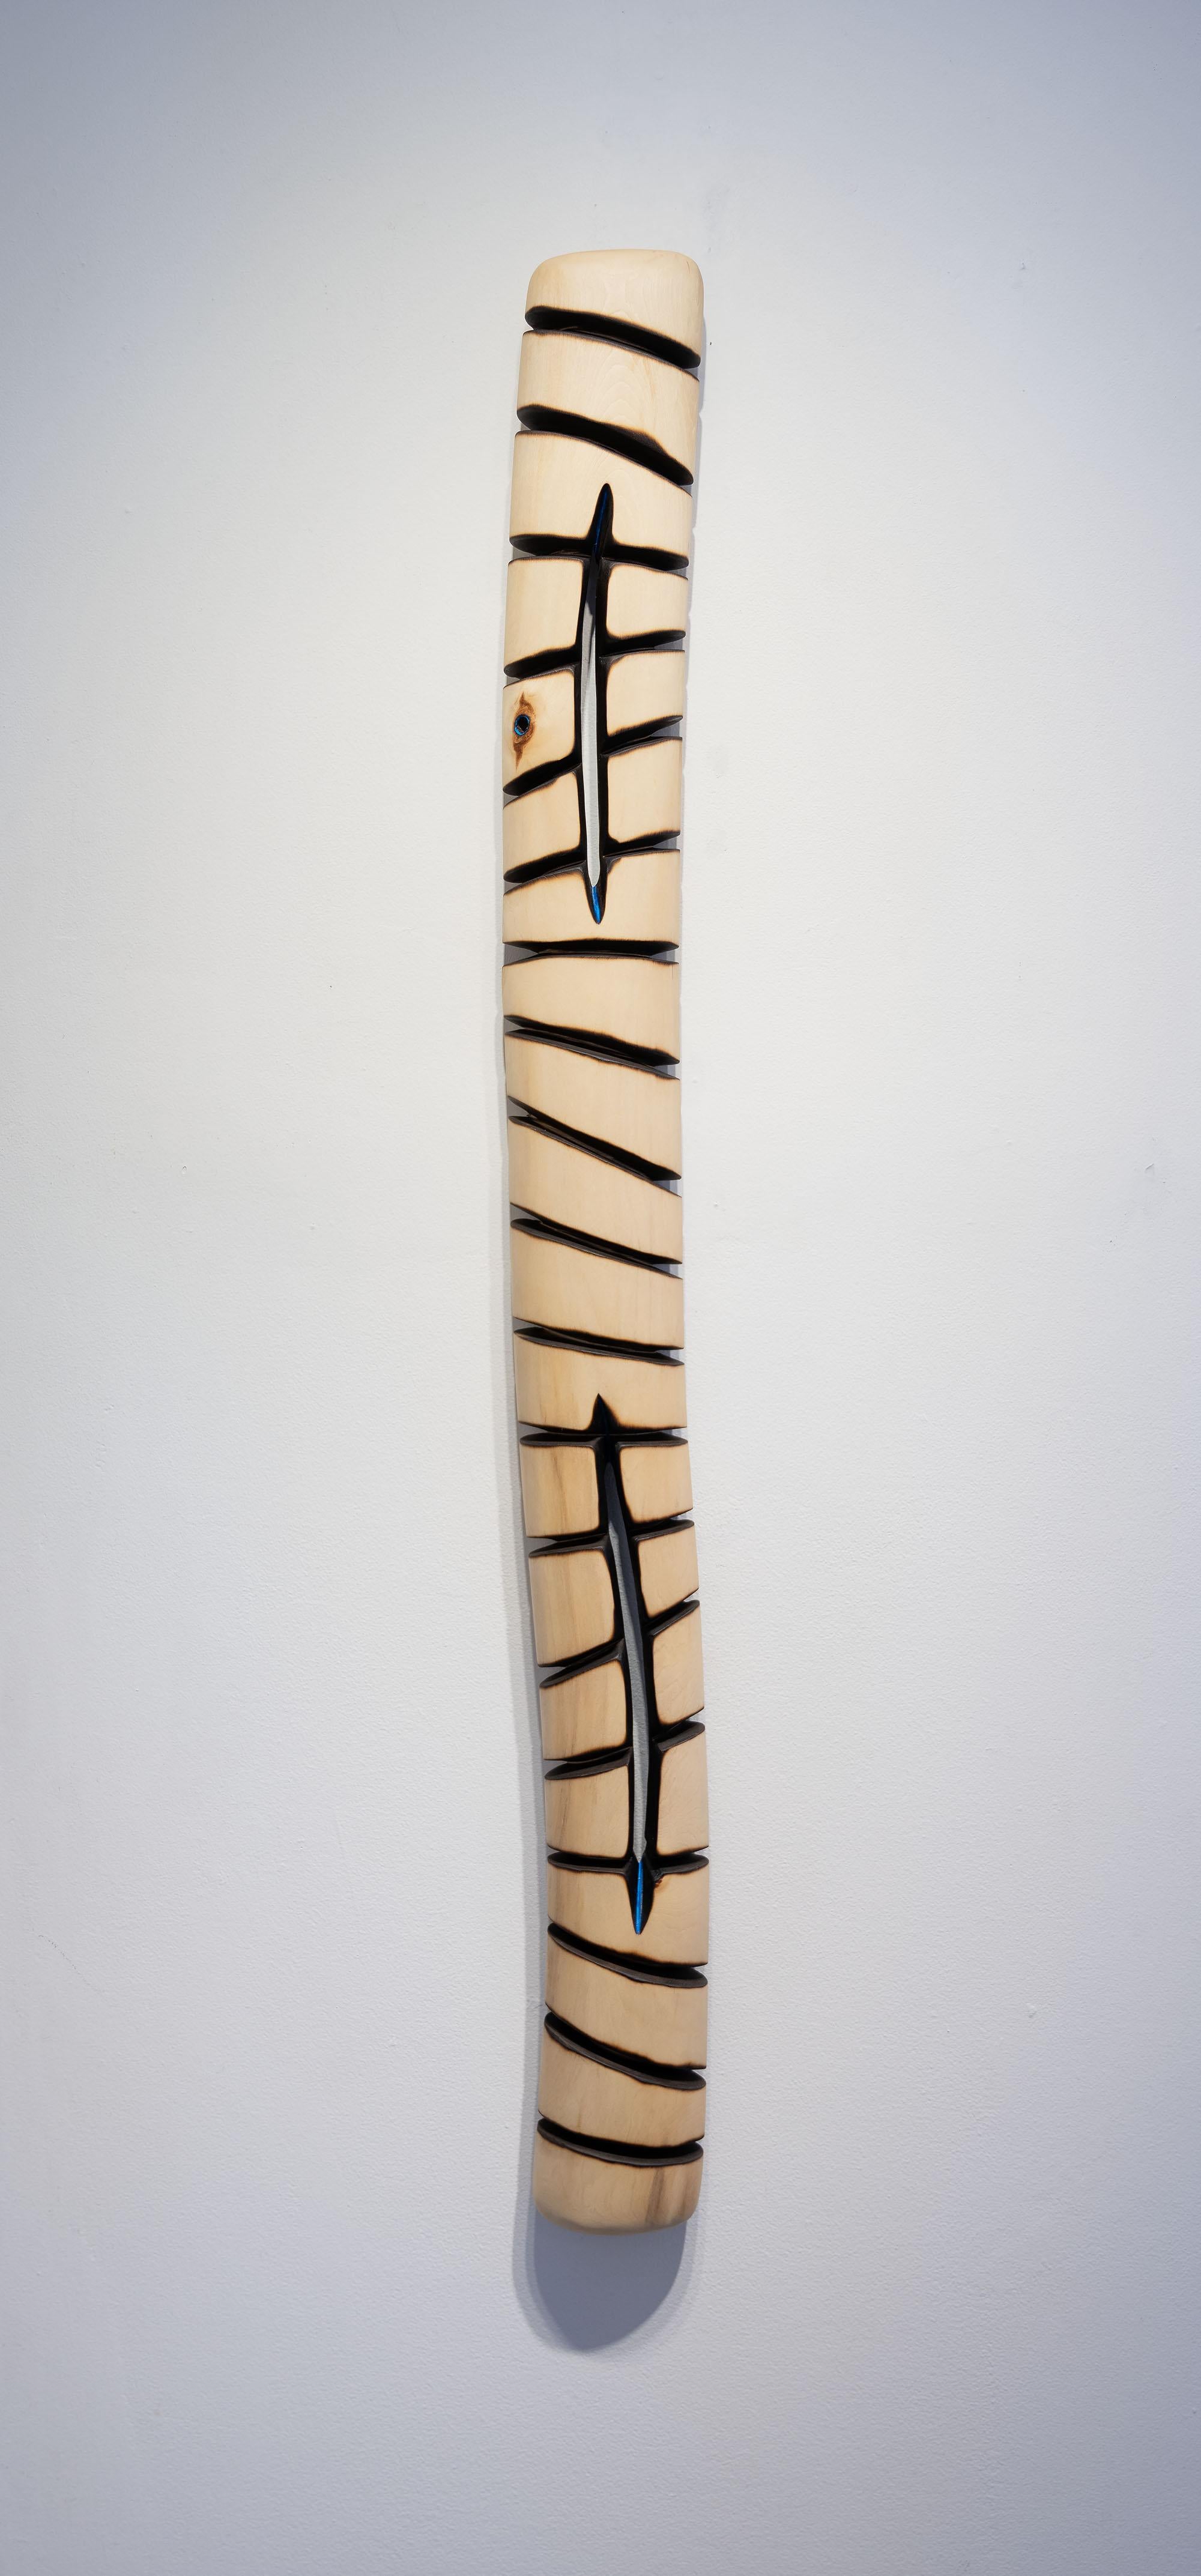 Greg Joubert Abstract Sculpture - Transition